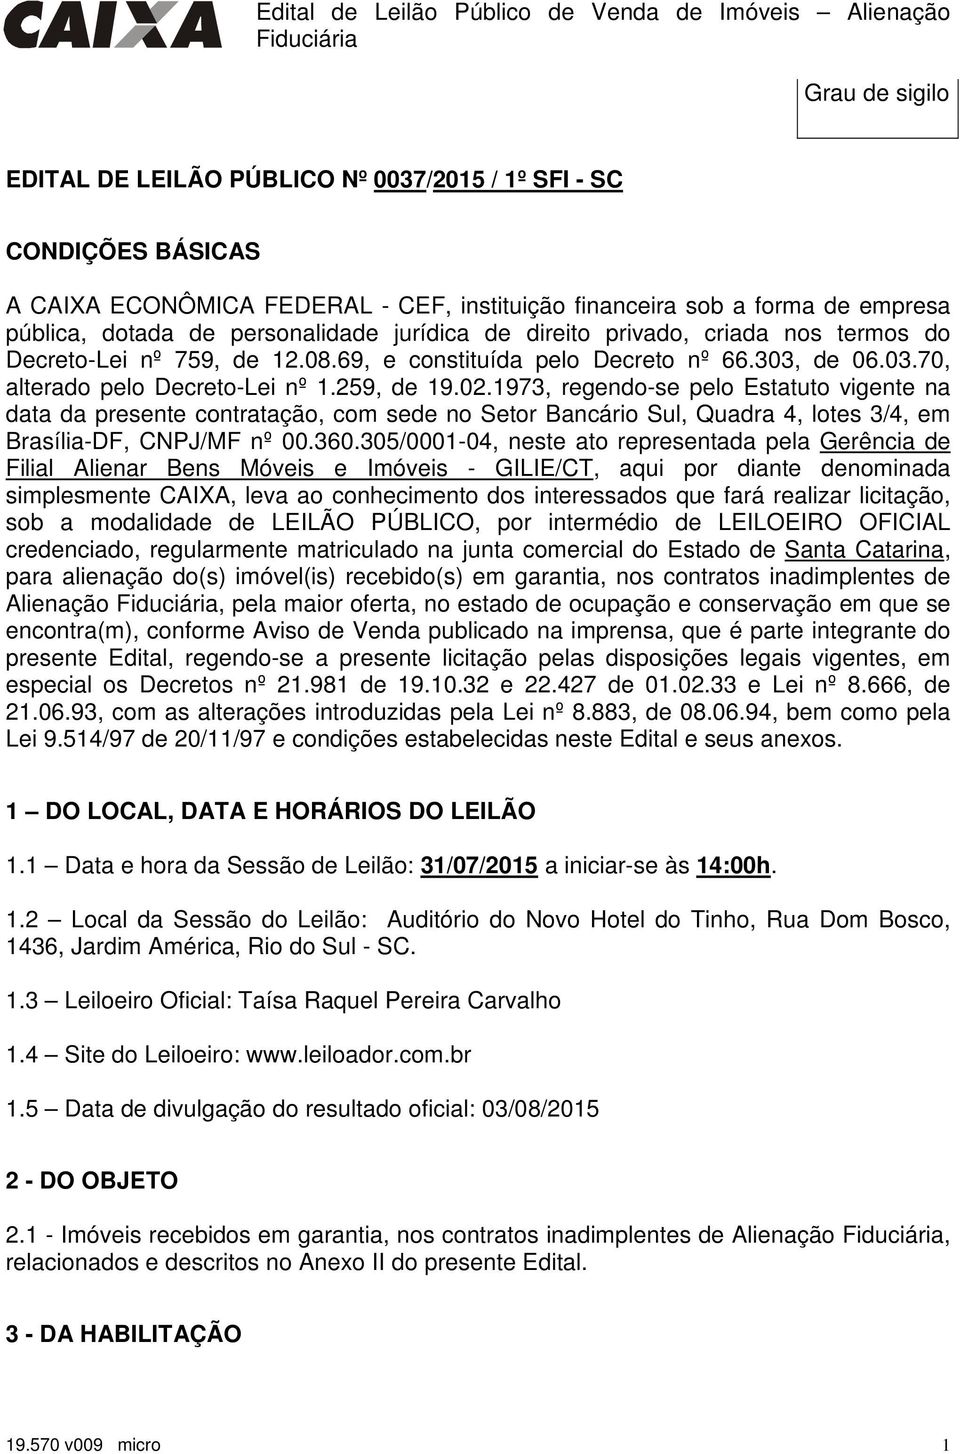 1973, regendo-se pelo Estatuto vigente na data da presente contratação, com sede no Setor Bancário Sul, Quadra 4, lotes 3/4, em Brasília-DF, CNPJ/MF nº 00.360.